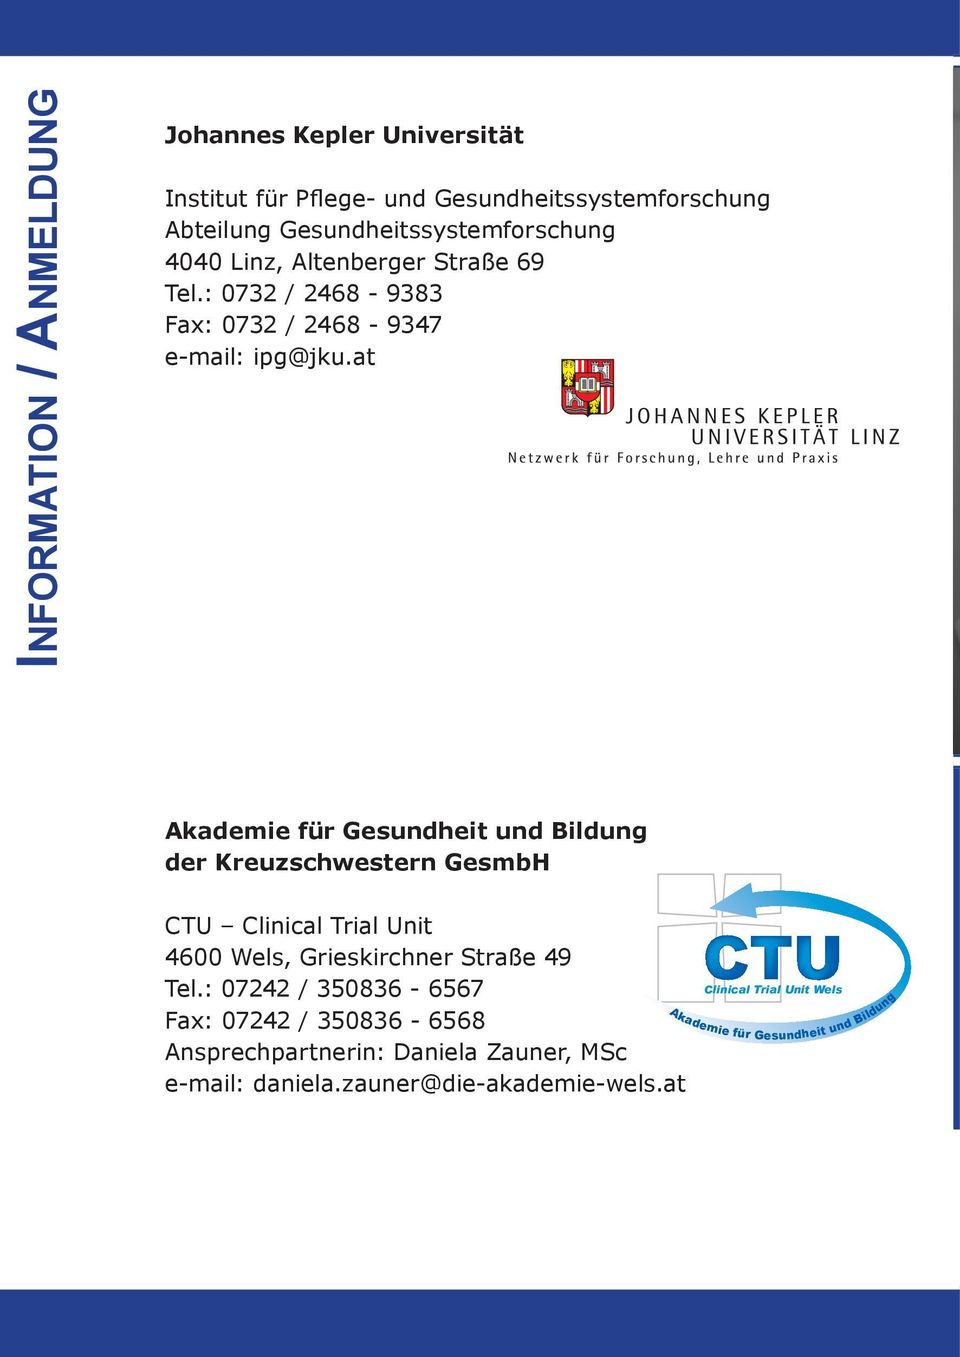 at Akademie für Gesundheit und Bildung der Kreuzschwestern GesmbH CTU Clinical Trial Unit 4600 Wels, Grieskirchner Straße 49 Tel.